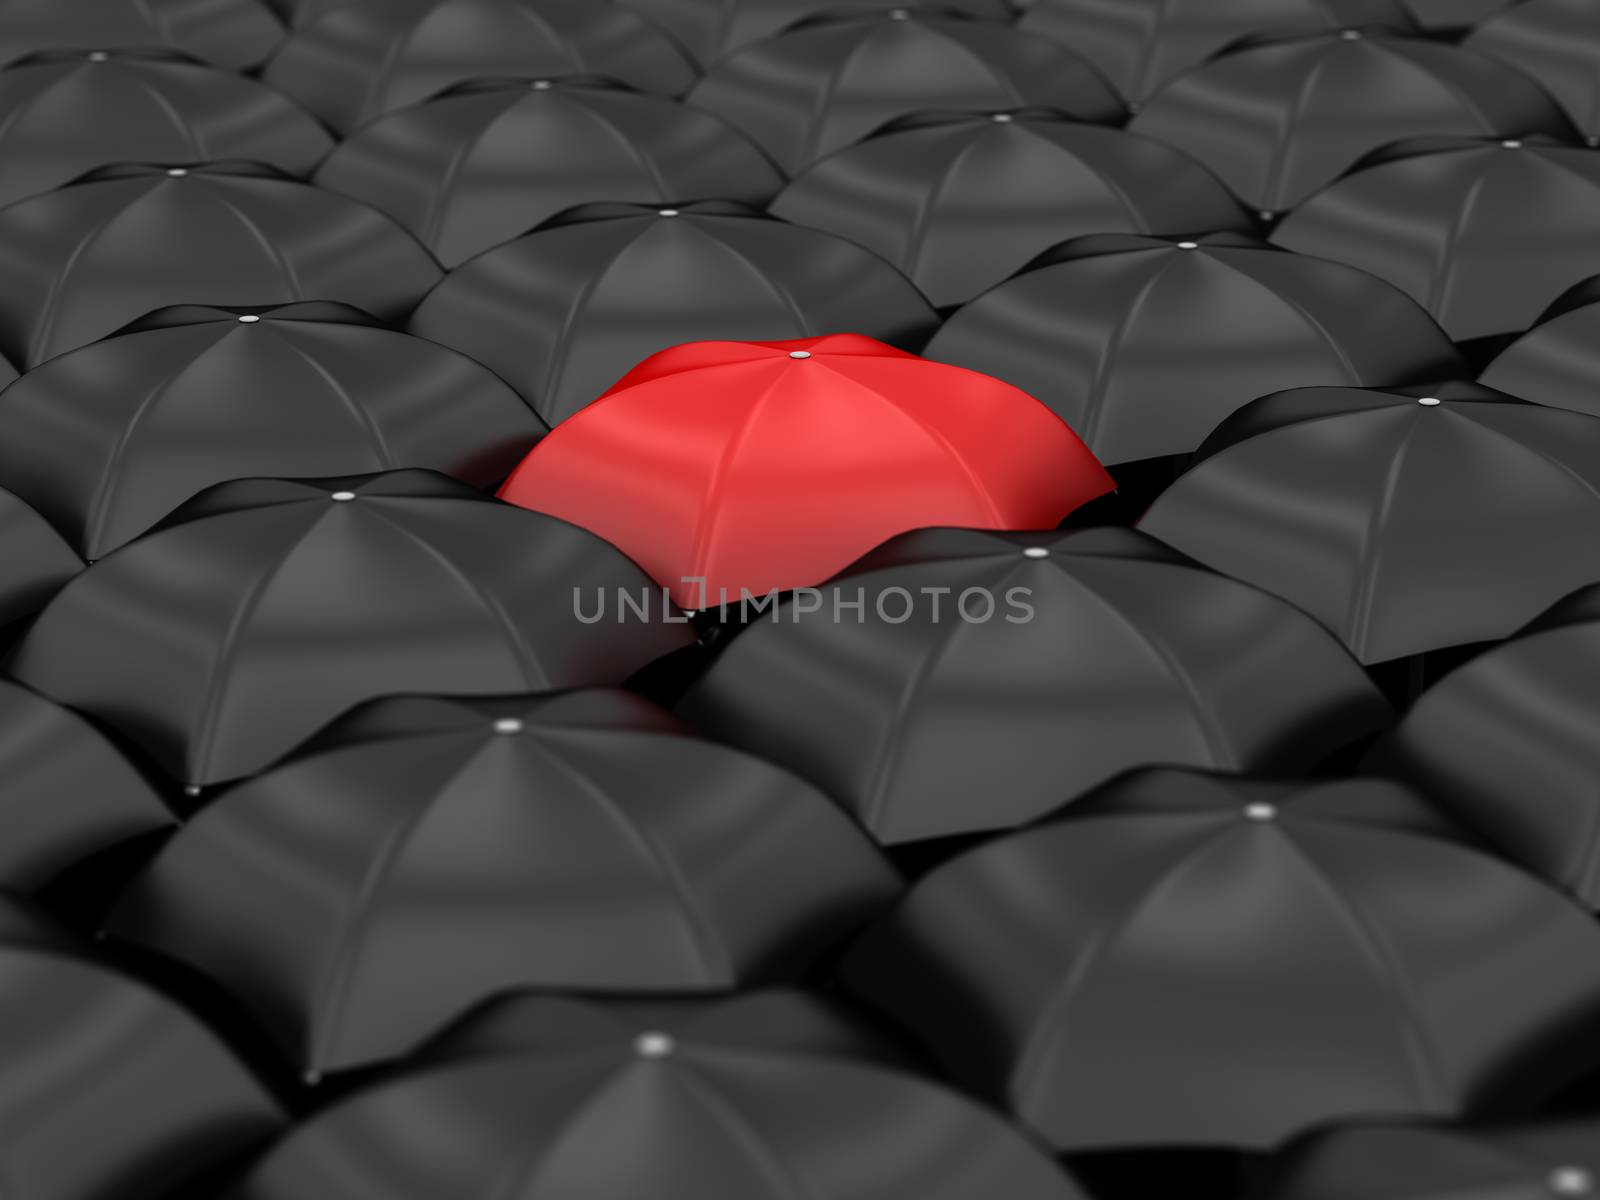 unique red umbrella with many black umbrellas